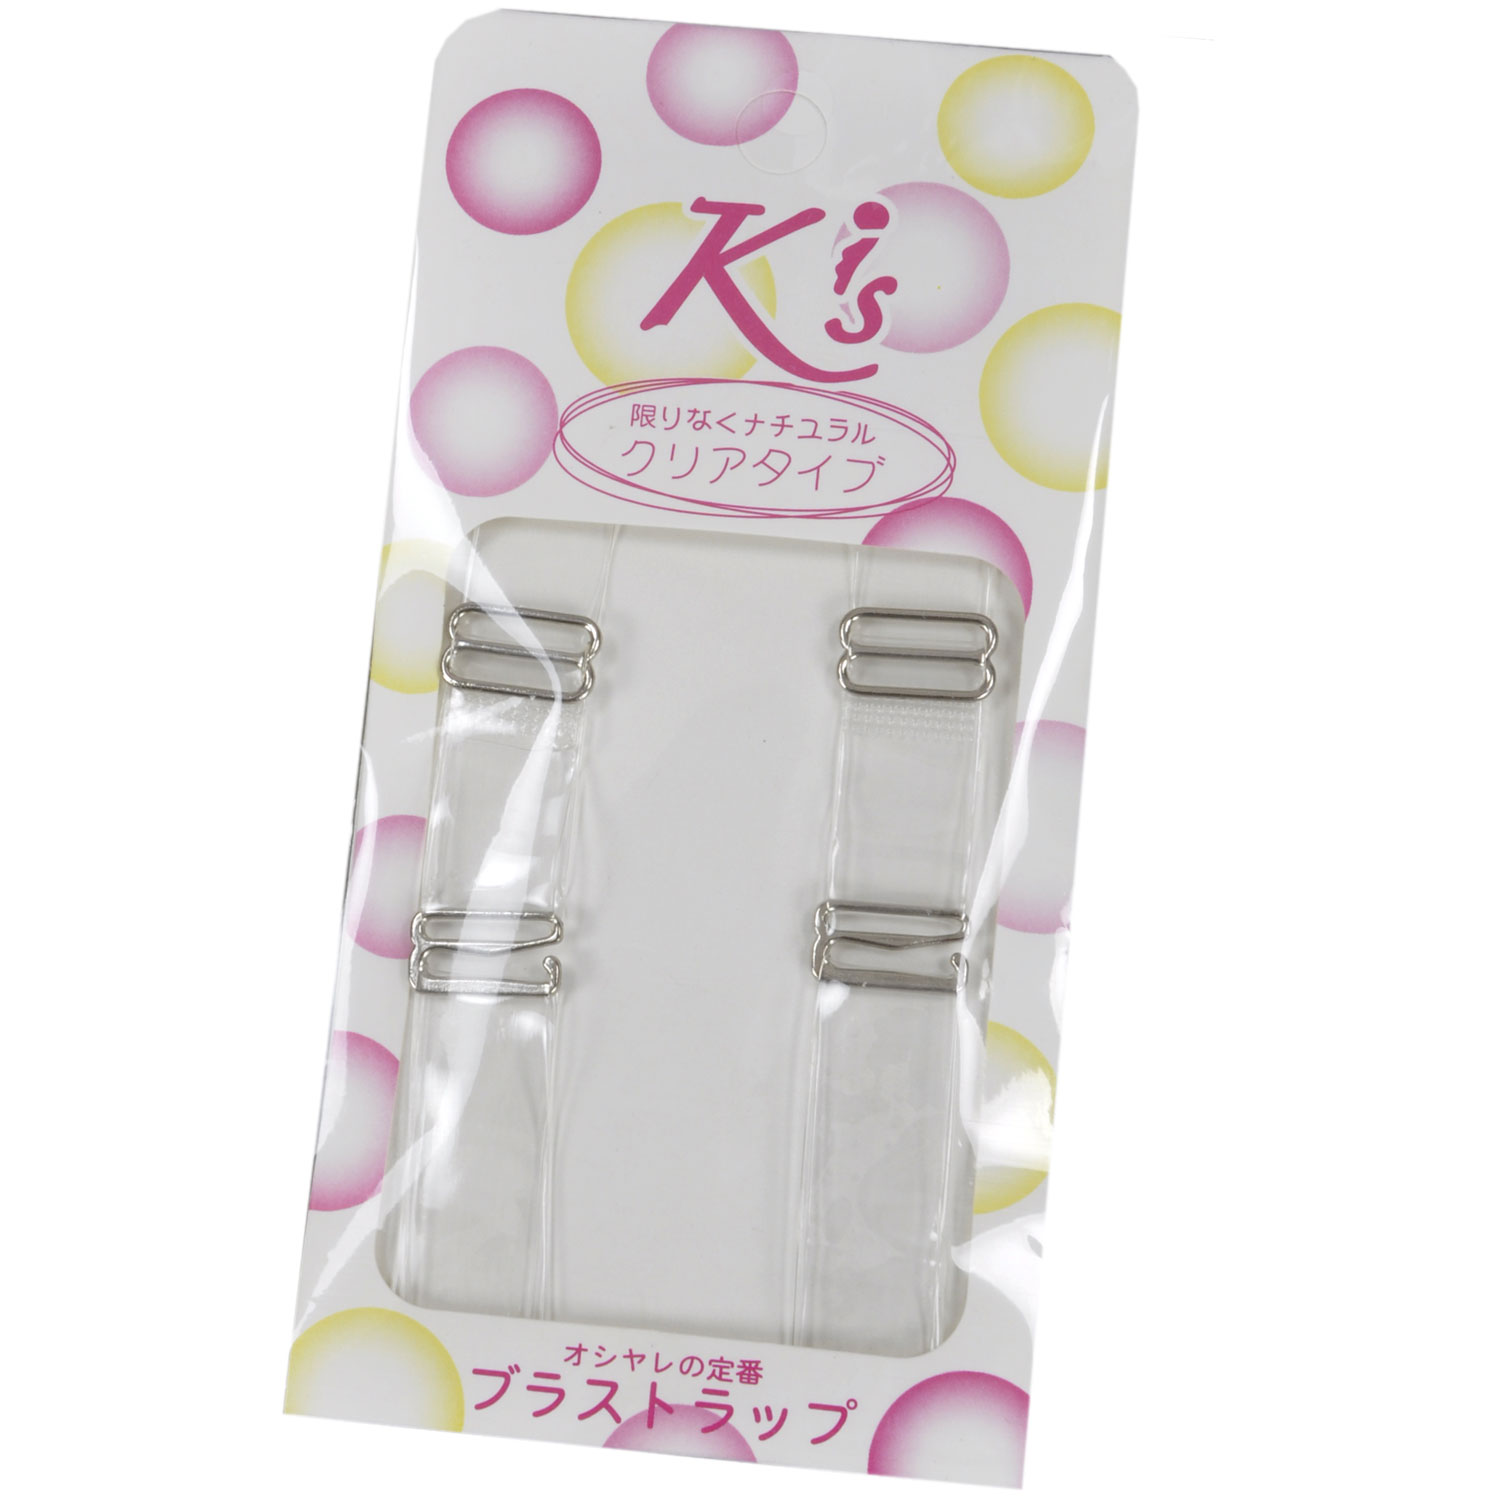 Underwear - kis 1.5 transparent yarn mill shoulder strap invisible shoulder strap